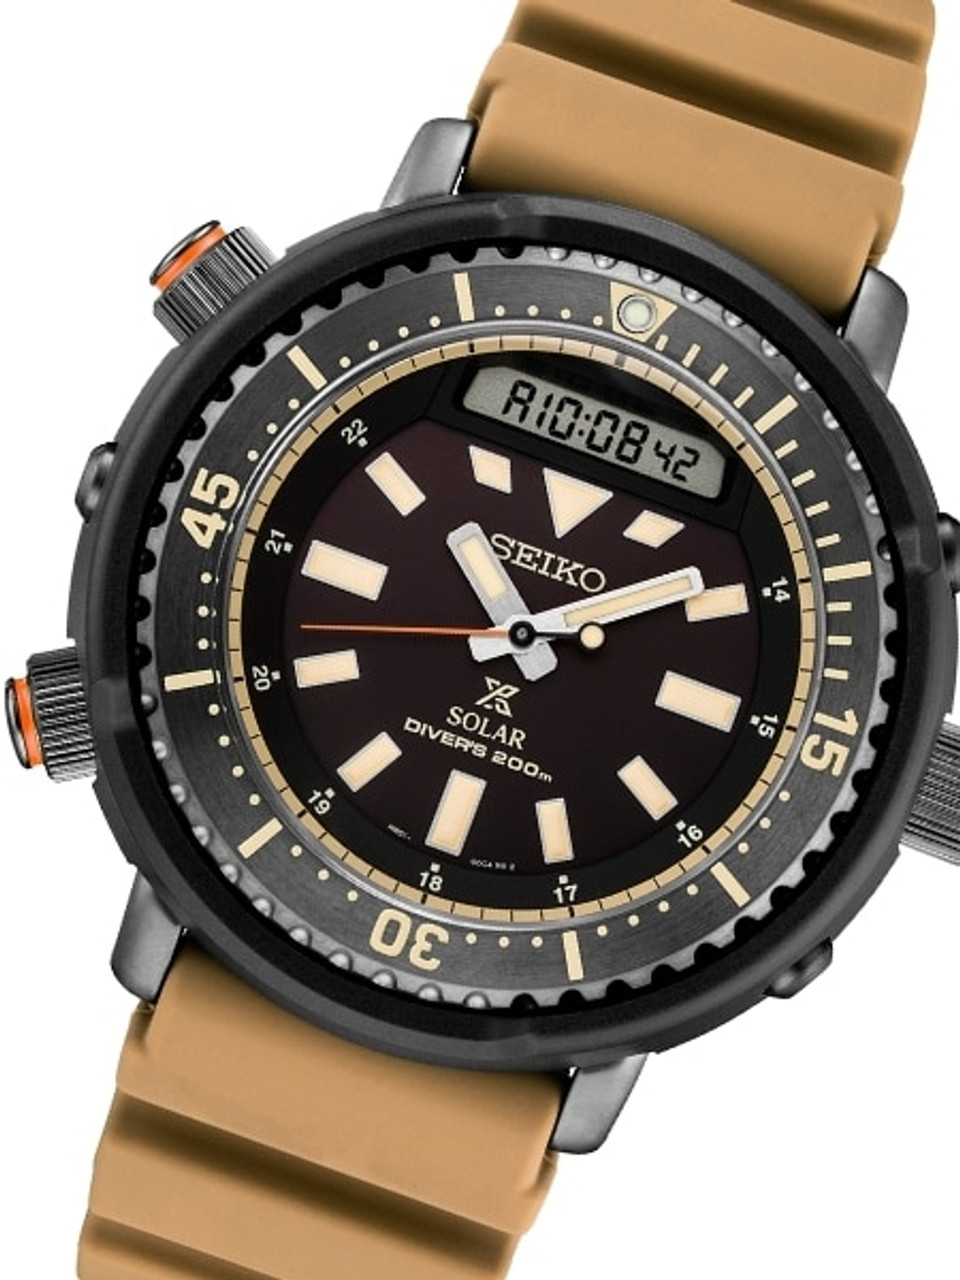 Seiko Arnie Prospex SNJ029 Tuna Solar Powered Dive Watch